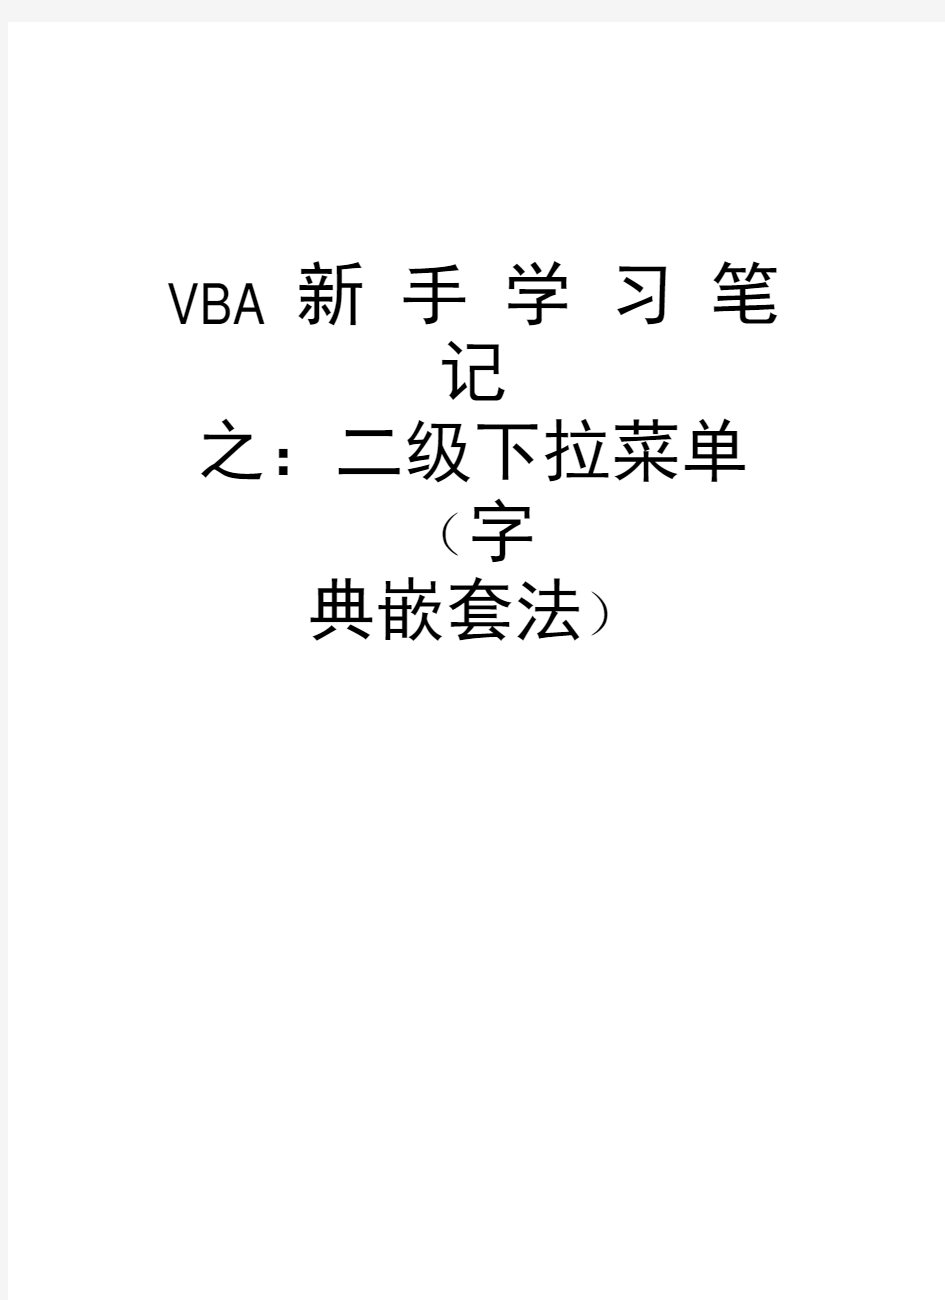 VBA新手学习笔记之：二级下拉菜单(字典嵌套法)教学内容